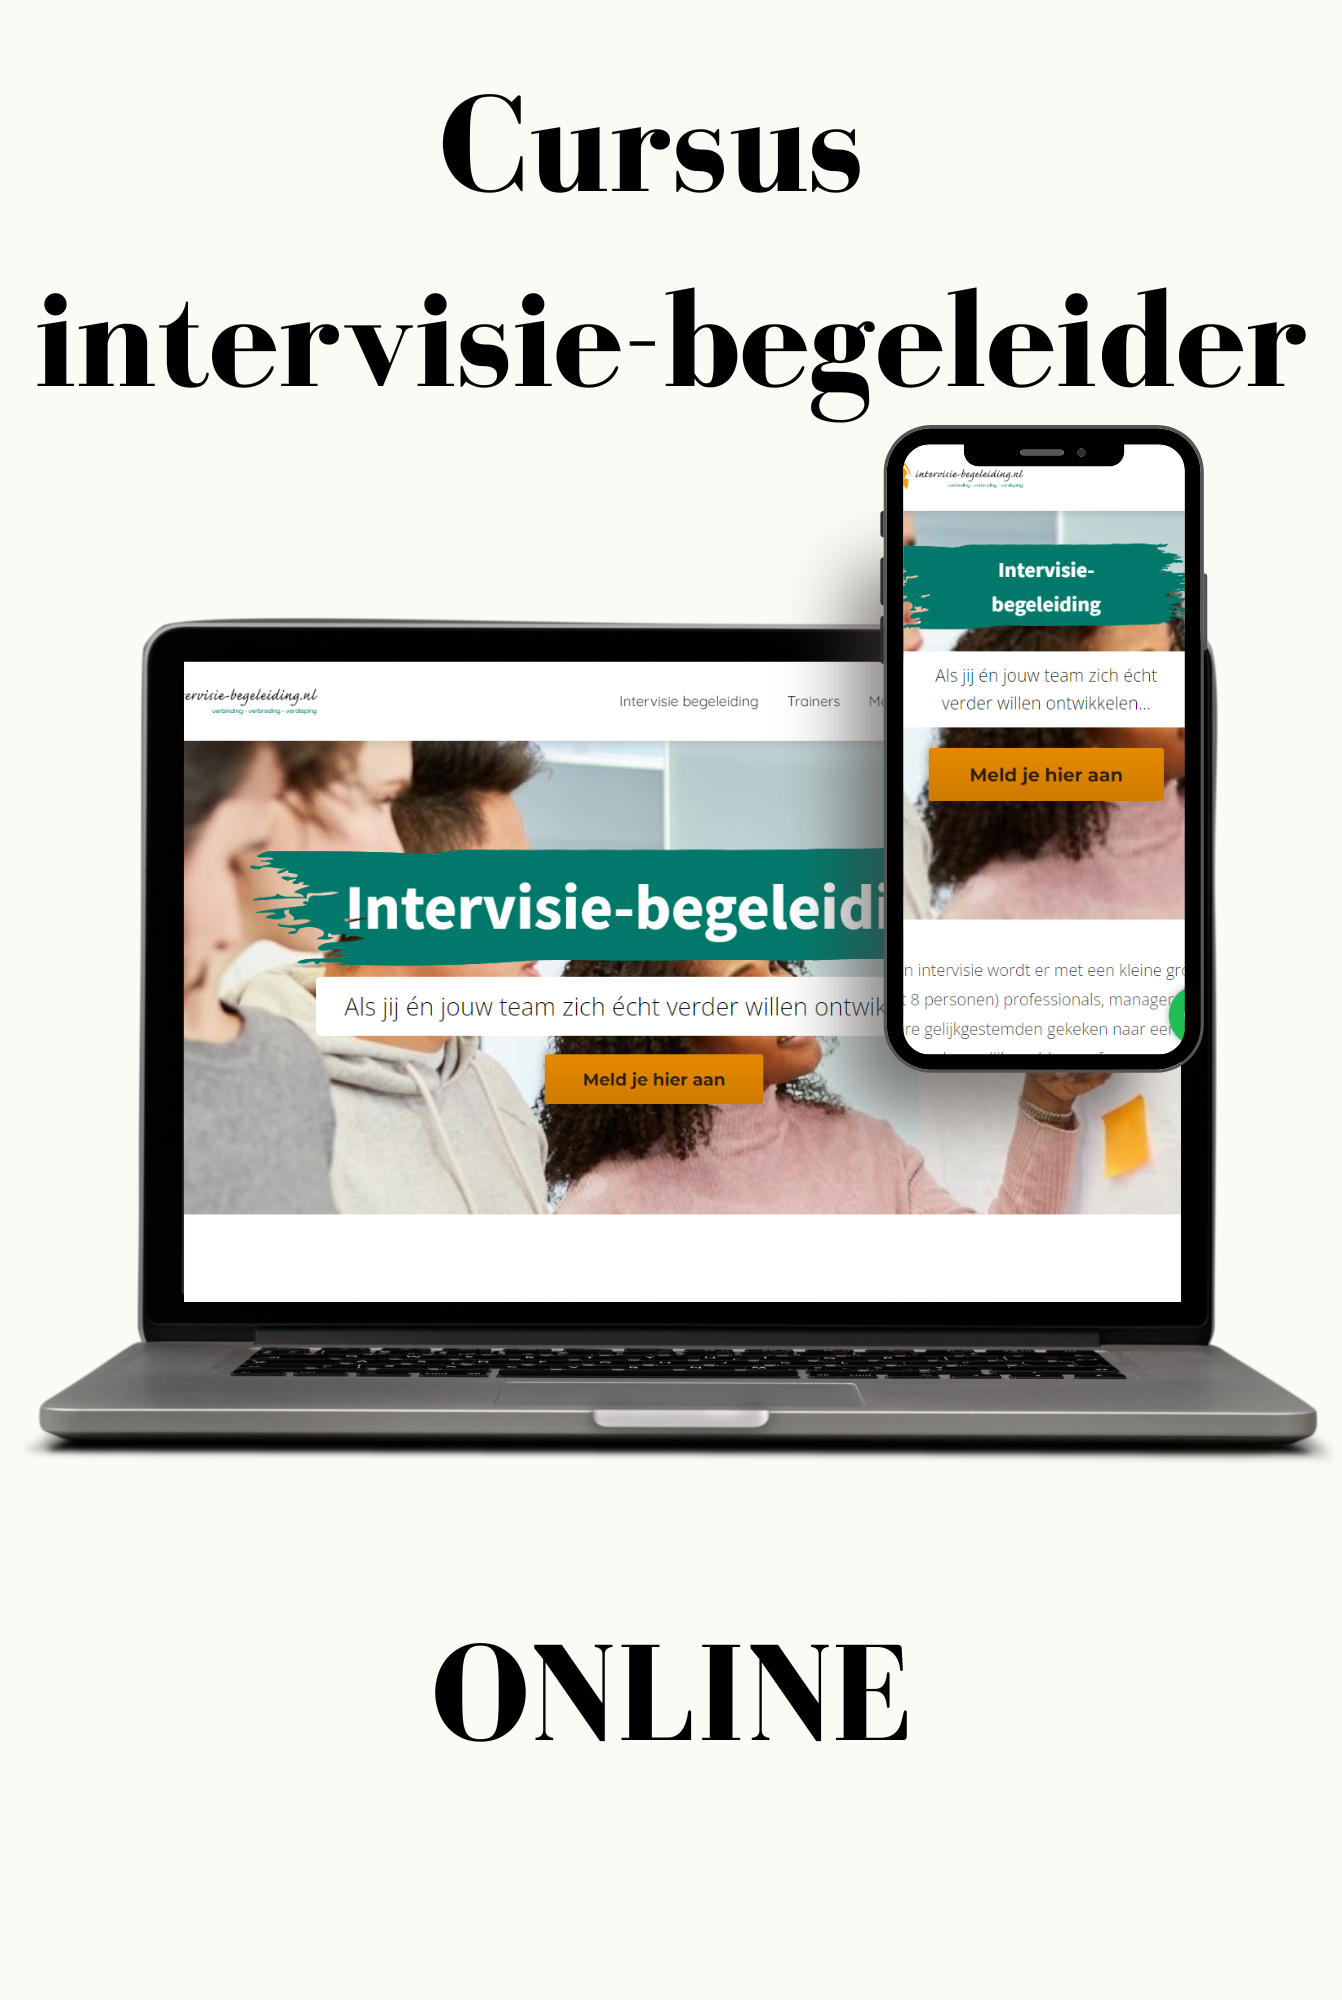 cursus-intervisie-begeleider-online-online-intervisiebegeleiding-intervisie-begeleiding-nl